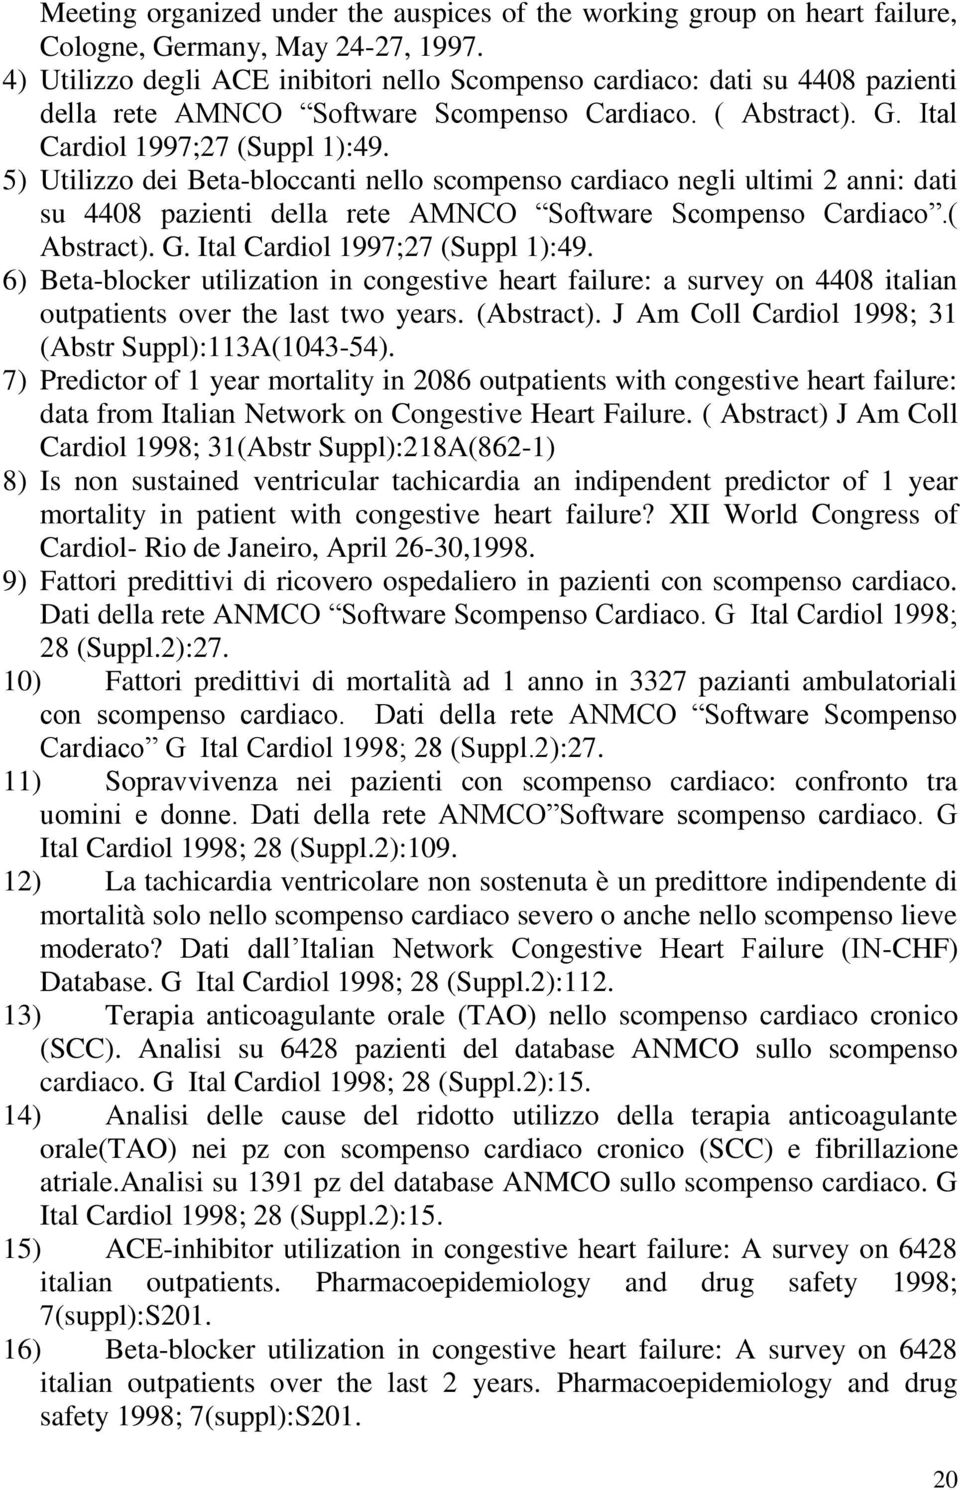 5) Utilizzo dei Beta-bloccanti nello scompenso cardiaco negli ultimi 2 anni: dati su 4408 pazienti della rete AMNCO Software Scompenso Cardiaco.( Abstract). G. Ital Cardiol 1997;27 (Suppl 1):49.